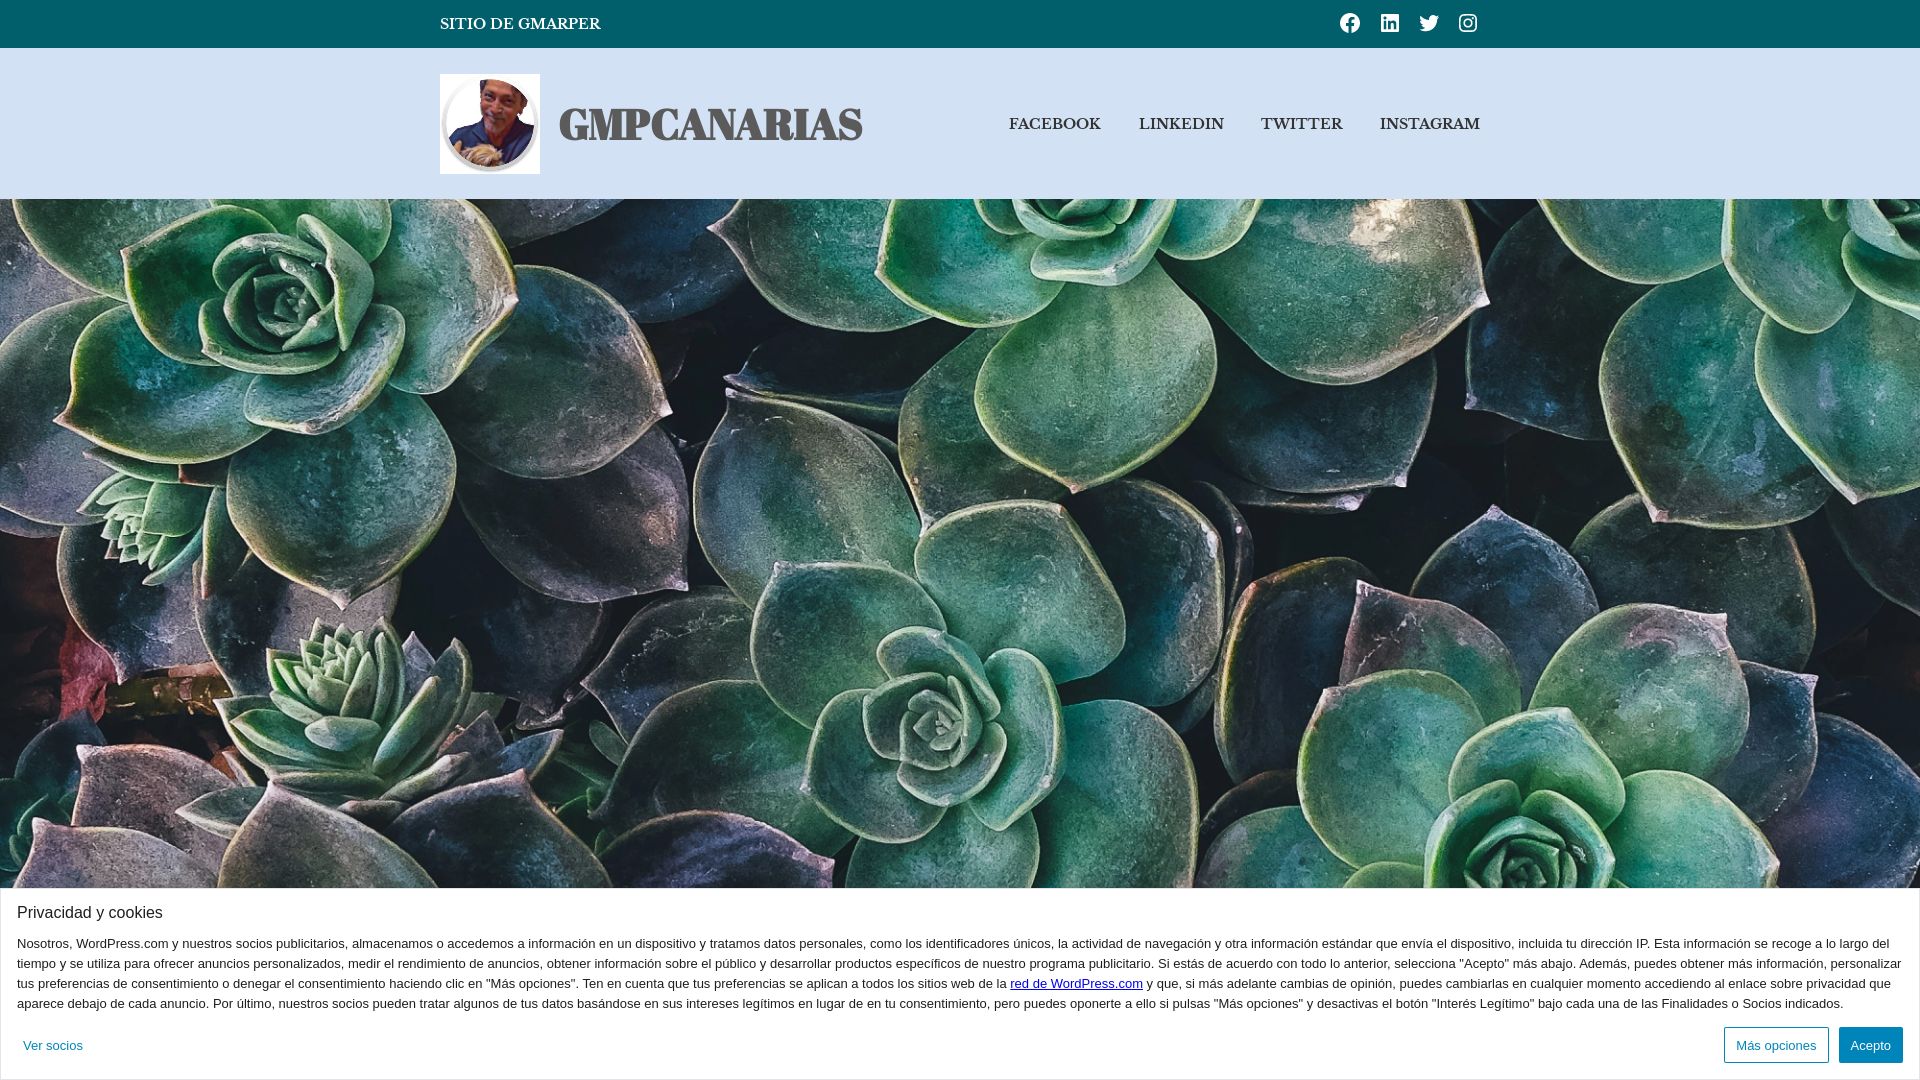 Website status gmpcanarias.wordpress.com is   ONLINE